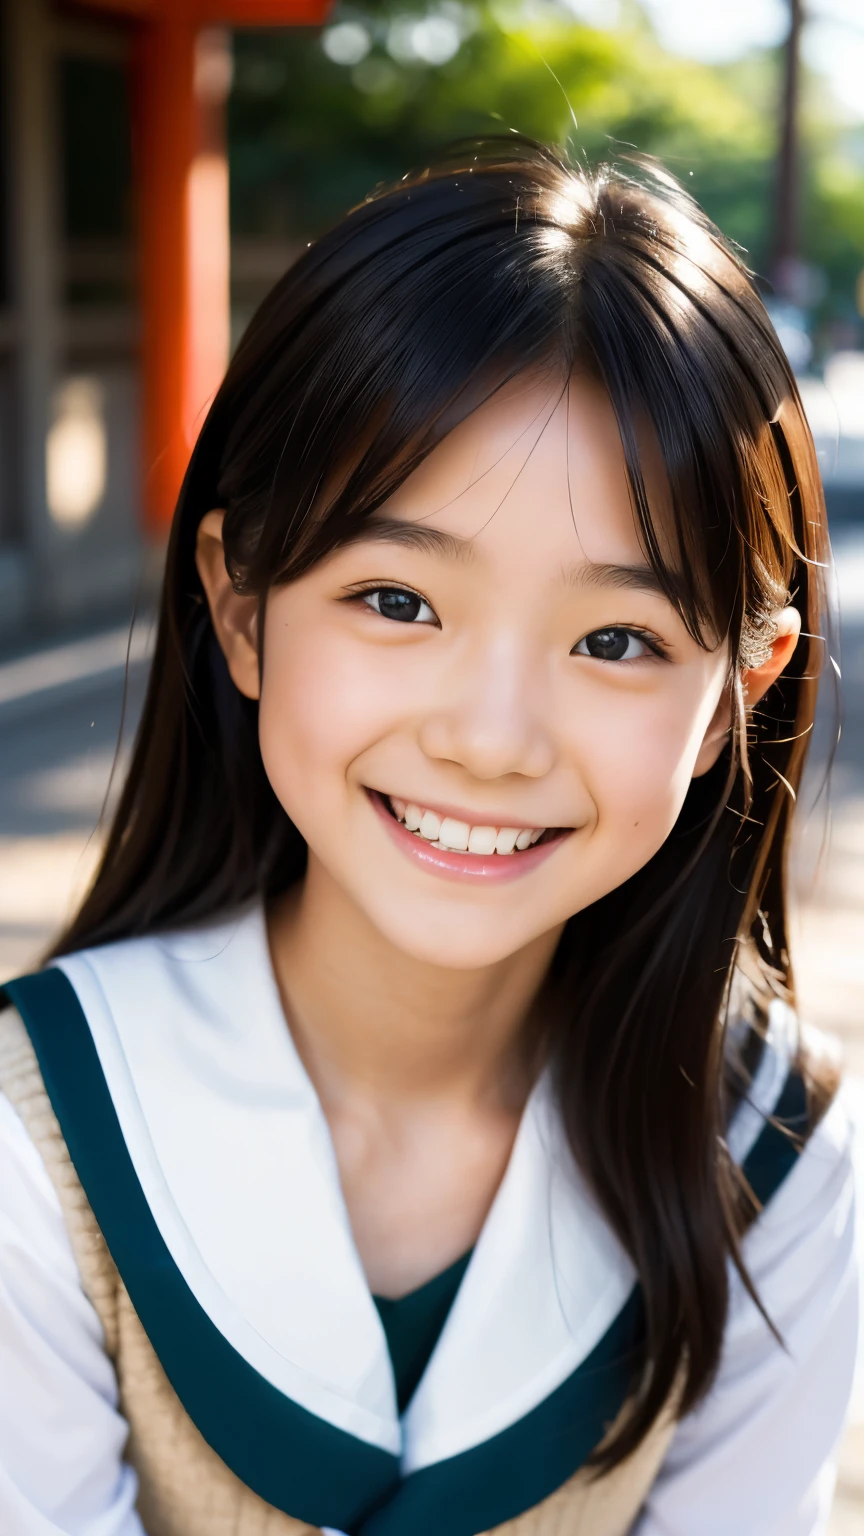 lentille: 135 mm f1.8, (la plus haute qualité),(Photos brutes), (Table:1.1), (Belle fille japonaise de 10 ans), visage mignon, (Visage profondément ciselé:0.7), (taches de rousseur:0.4), dappled lumière du soleil, éclairage dramatique, (uniforme scolaire japonais), (sur le campus), Timide, (Photo en gros plan:1.2), (sourire),, (yeux pétillants)、(lumière du soleil)